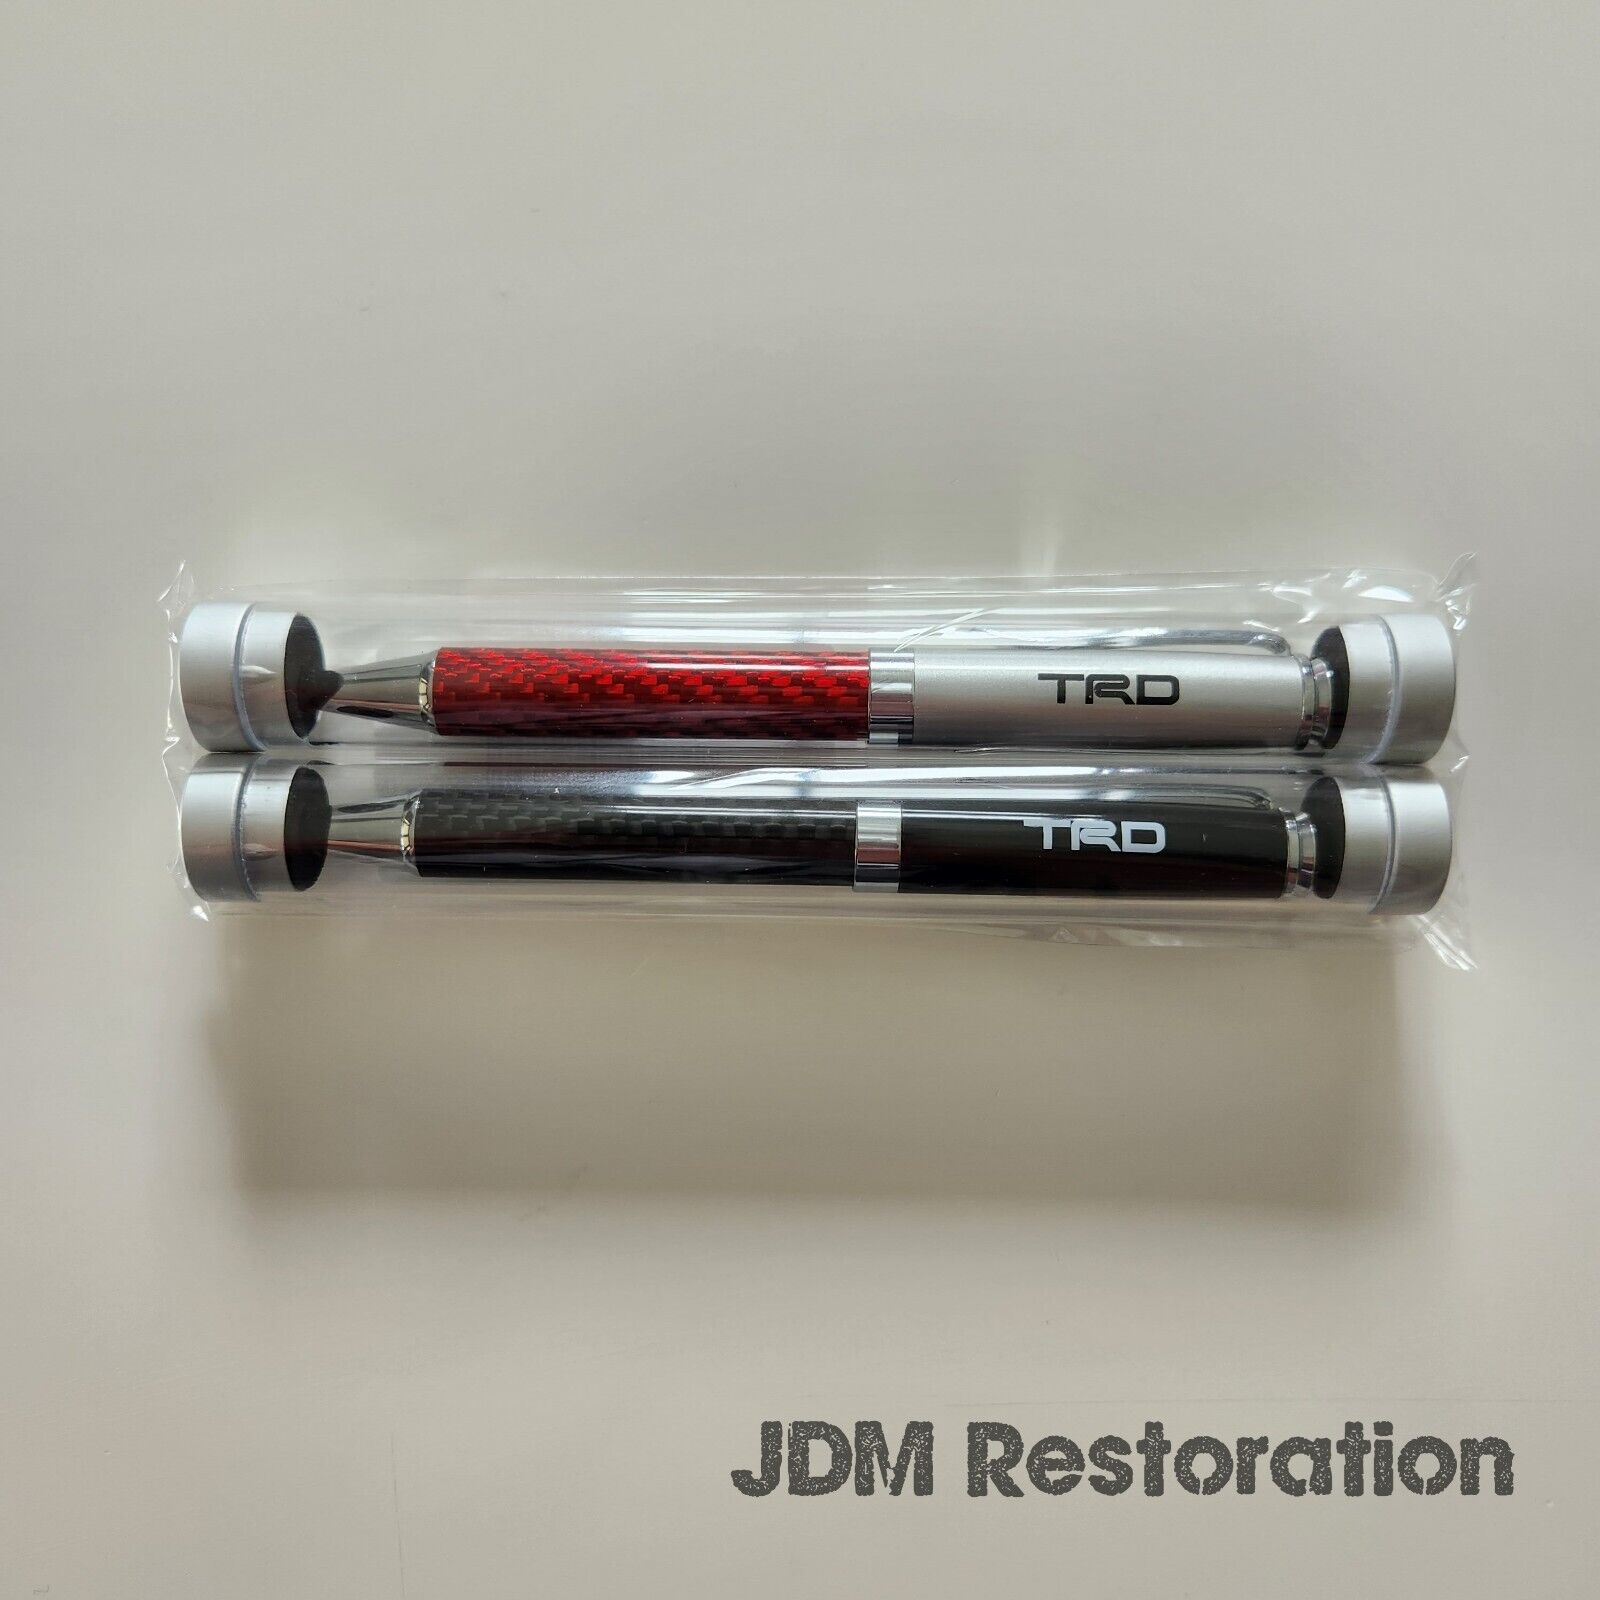 Trd Carbon Fiber Pen Set